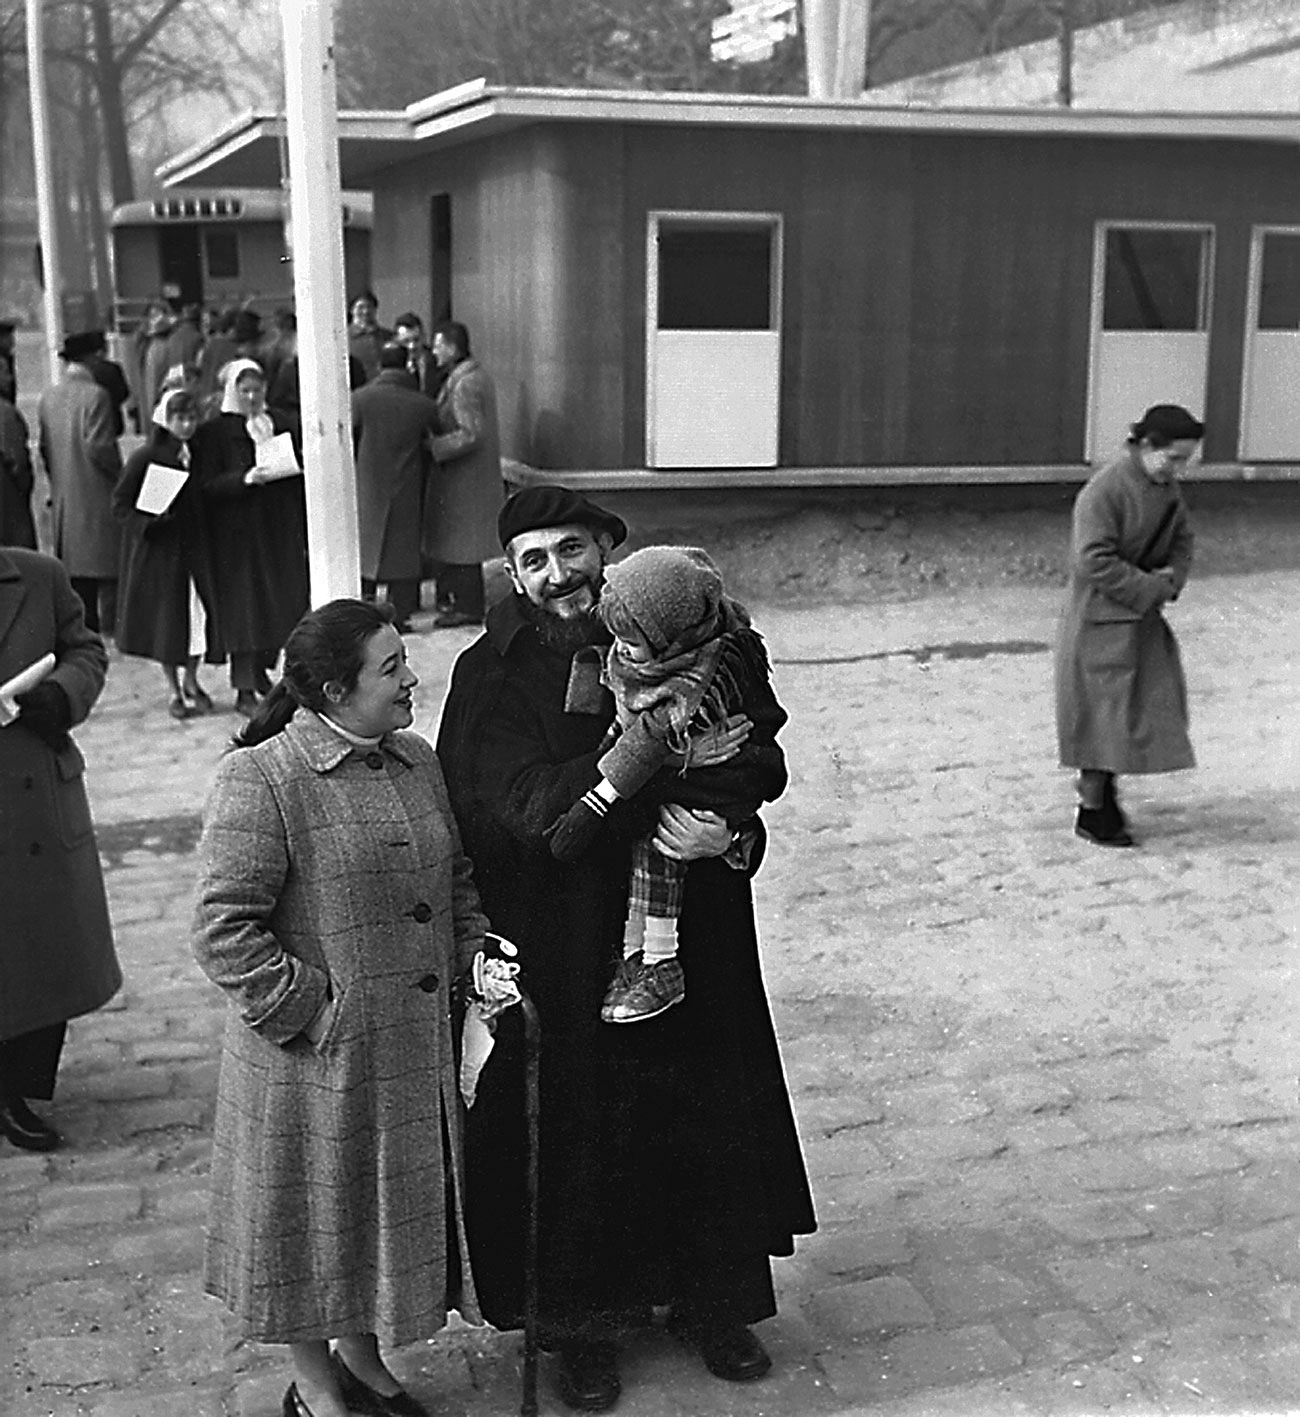 L’abbé Pierre en compagnie de la famille à laquelle la maison Les Jours Meilleurs est destinée, quai Alexandre-III, Paris, février 1956.